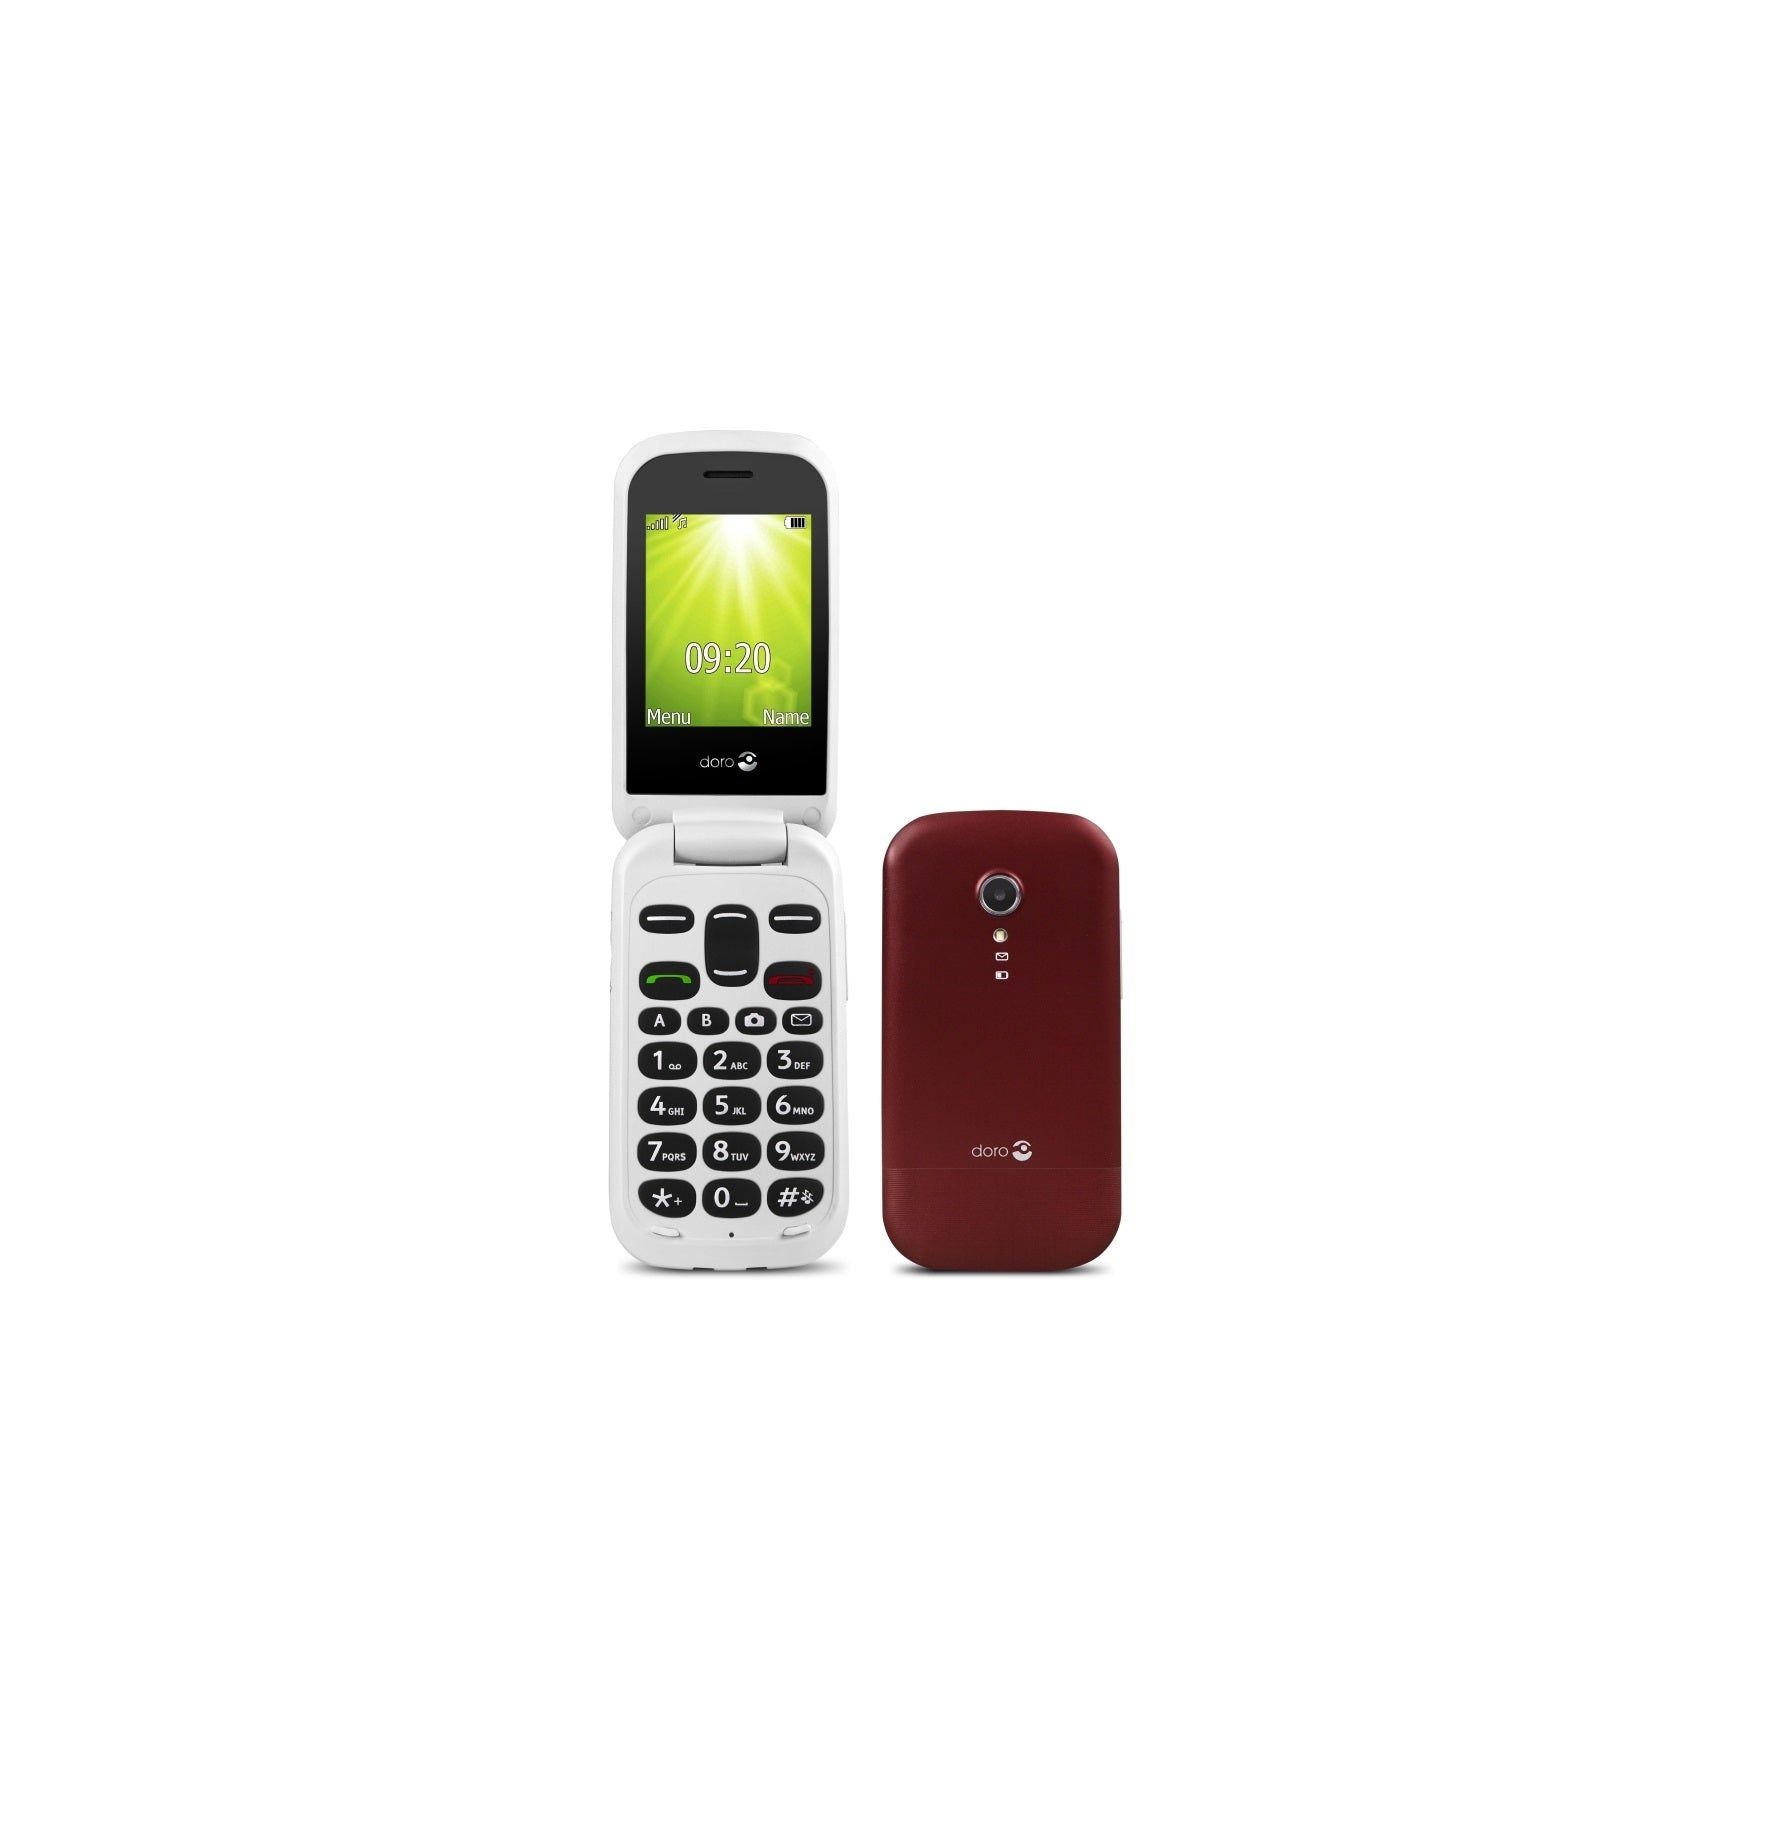 Doro Mobiele Klaptelefoon 2404 2G Senioren GSM Kopen van  Doro?- Vanaf €68.95 bij Pucshop.nl